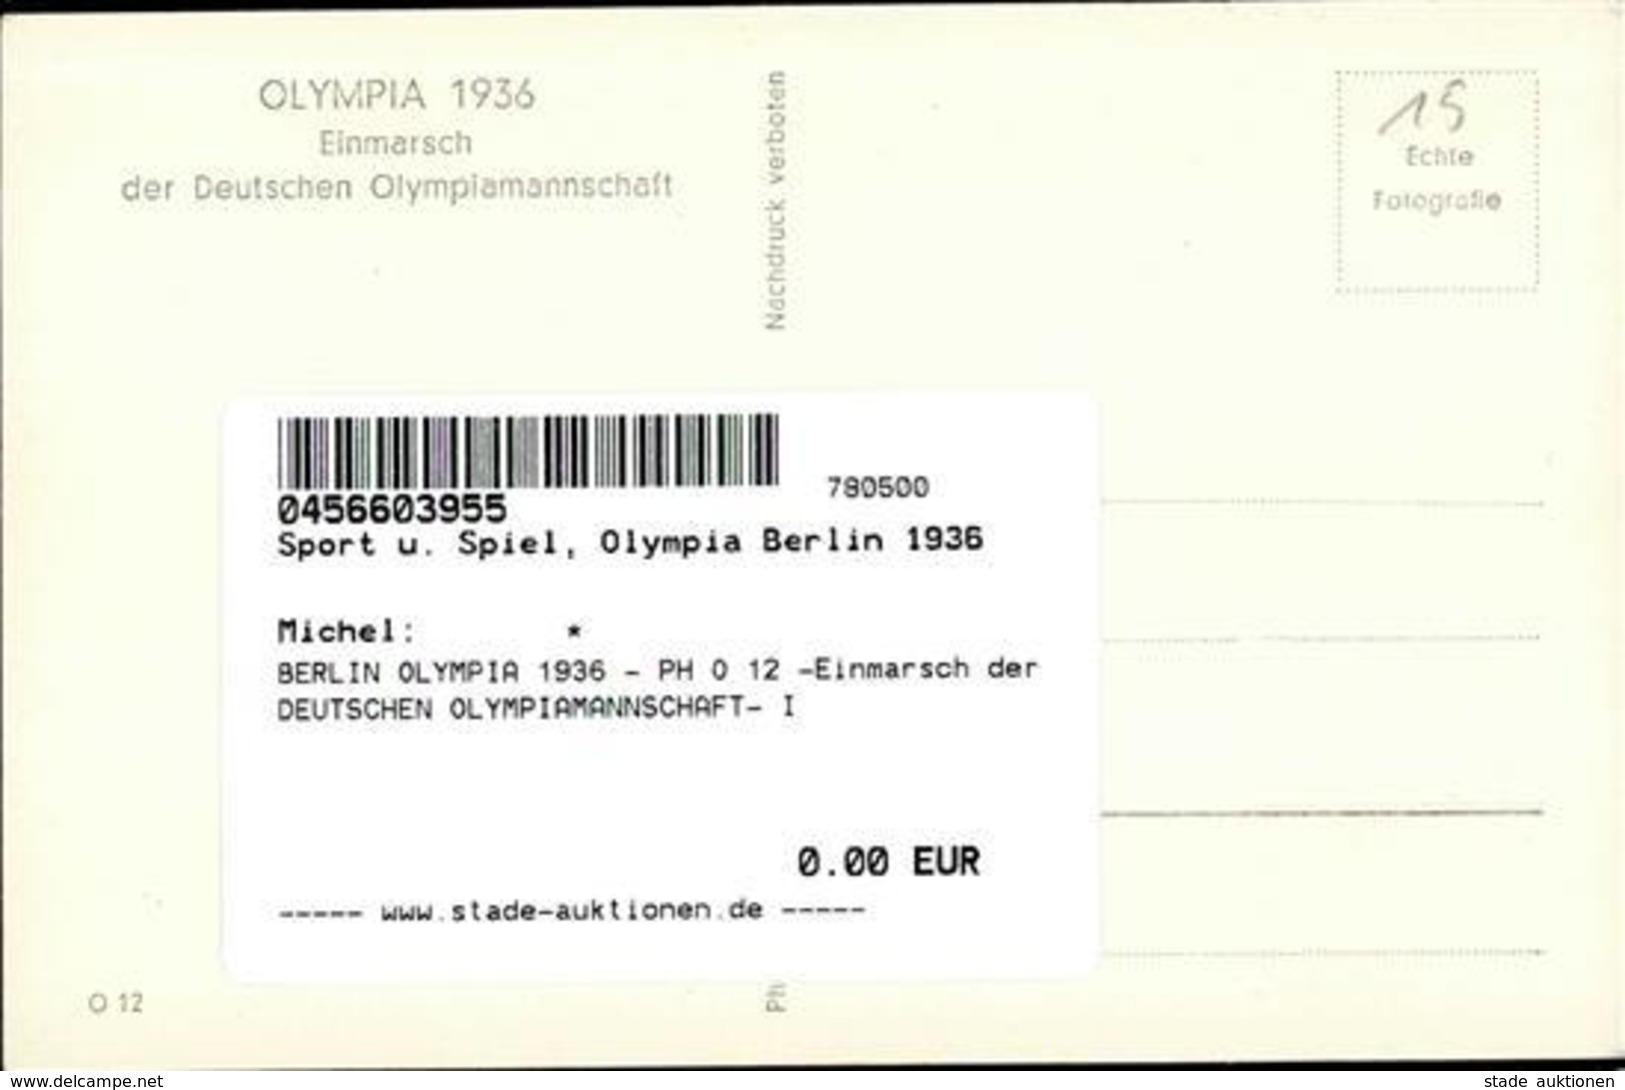 BERLIN OLYMPIA 1936 - PH O 12 -Einmarsch Der DEUTSCHEN OLYMPIAMANNSCHAFT- I - Olympic Games